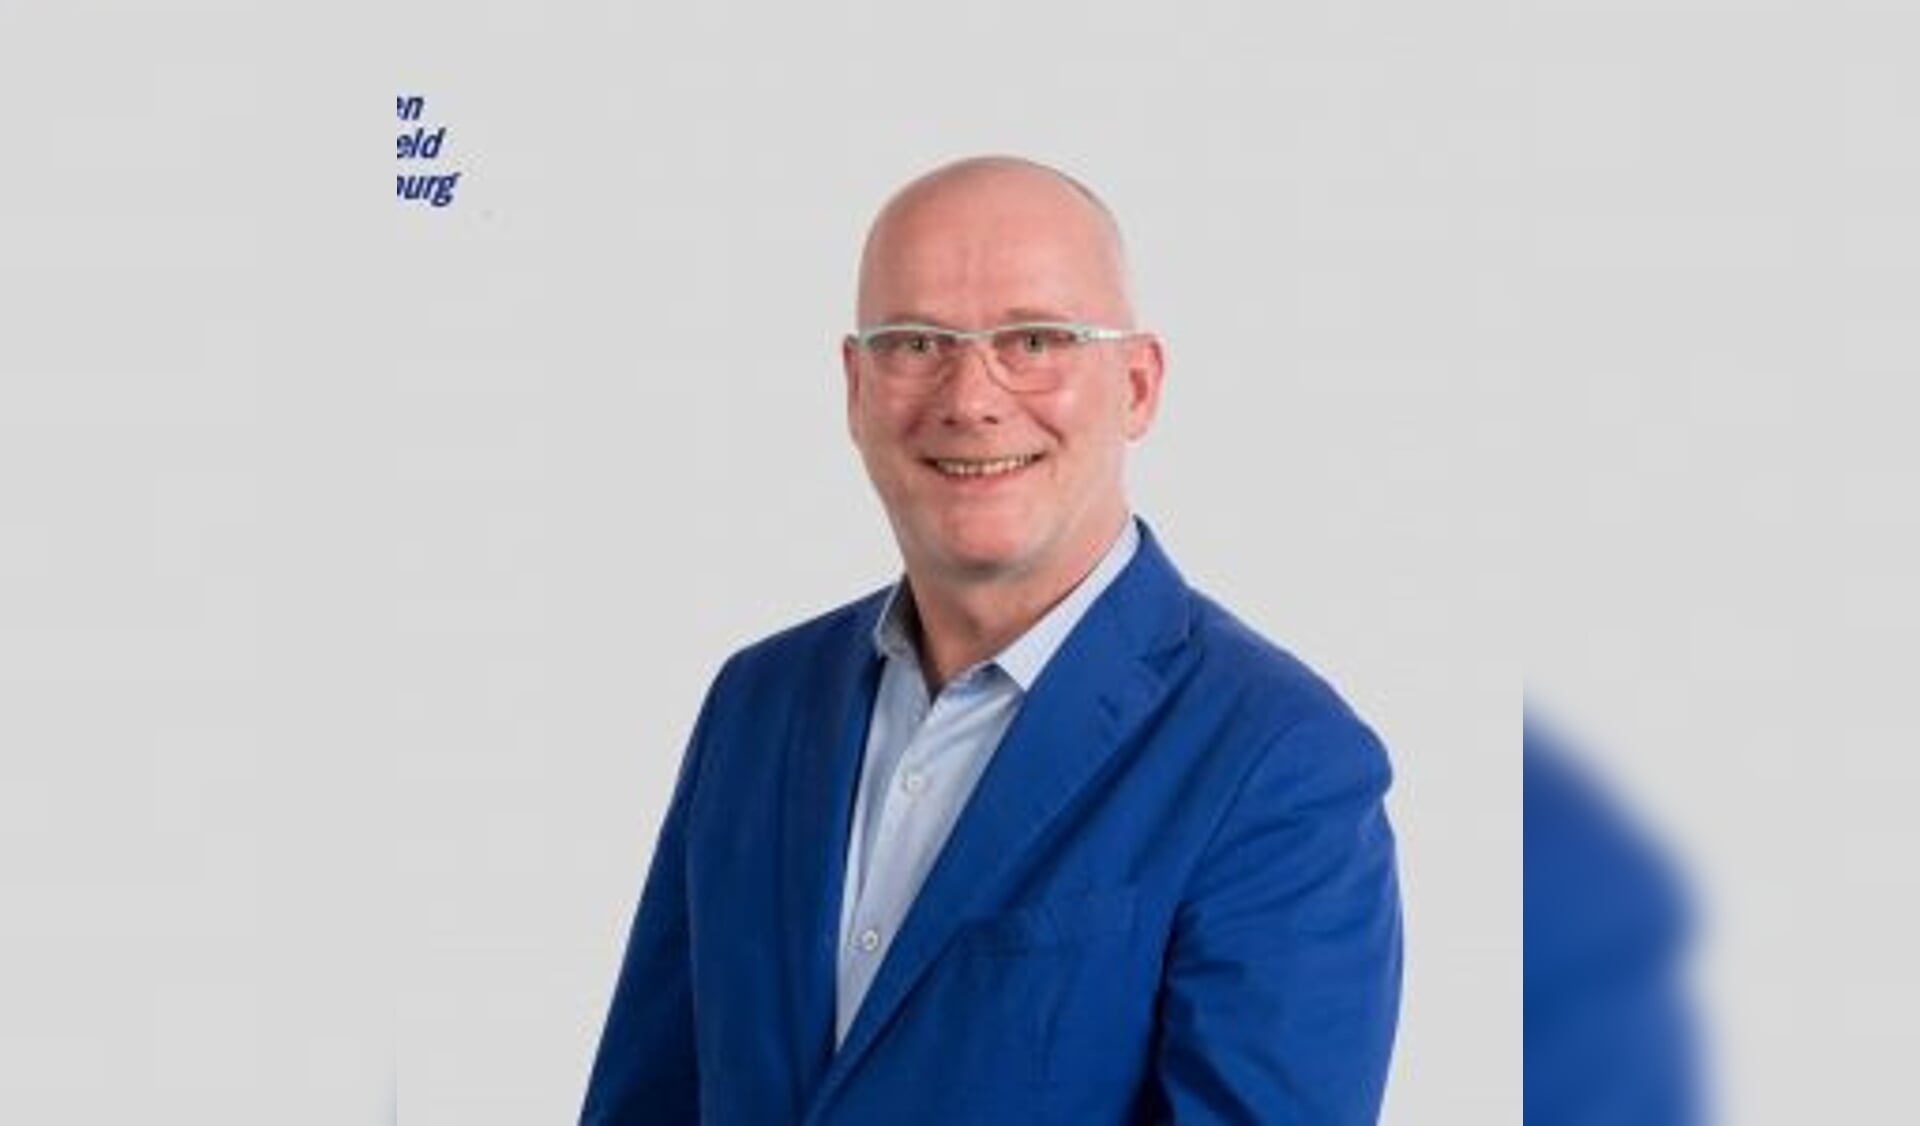 VVD-Raadslid Henk Lonink vertrekt uit Leusden en geeft daarom zijn raadszetel op